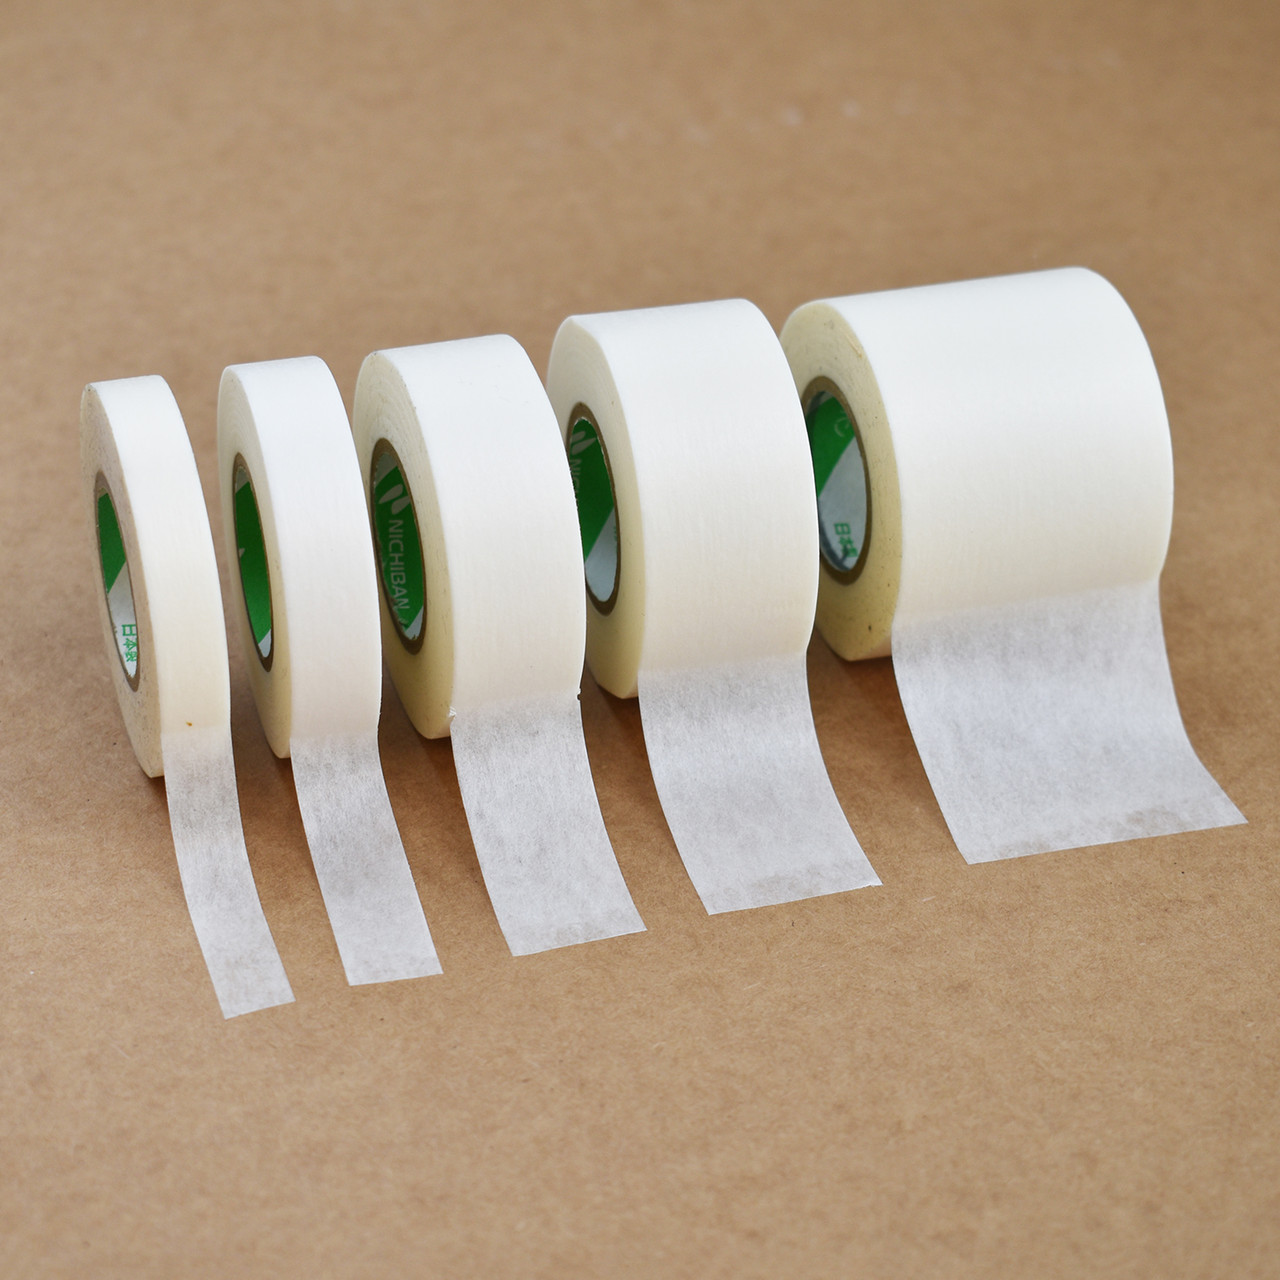 Wholesale Nichiban #251 White Washi Masking Tape- Sold by the Sleeve